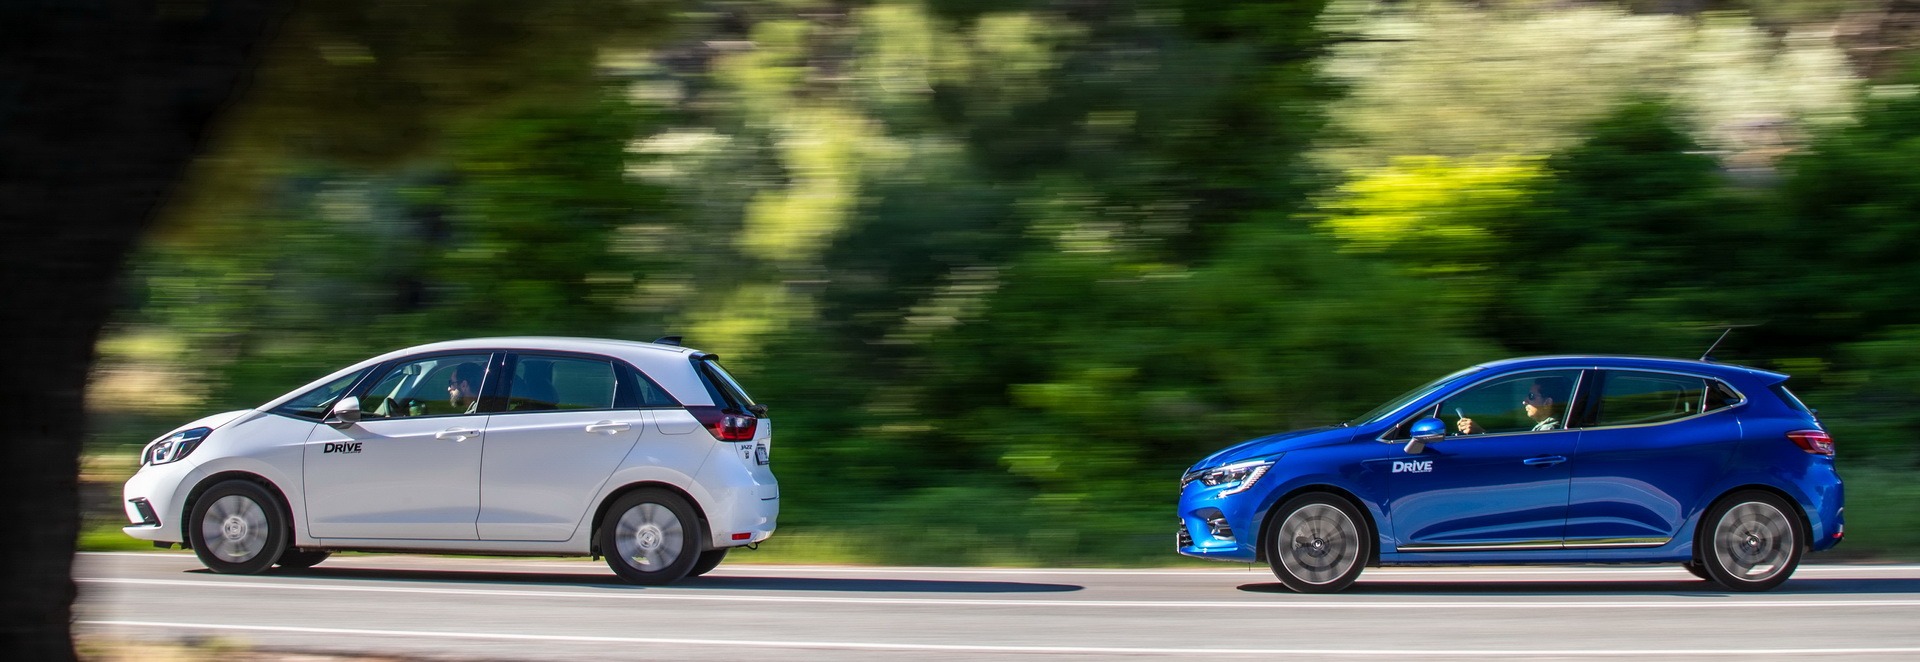 Συγκρίνουμε υβριδικά: Honda Jazz e:HEV vs Renault Clio E-Tech, Photo credits DRIVE Media Group/Fotini Pimpa